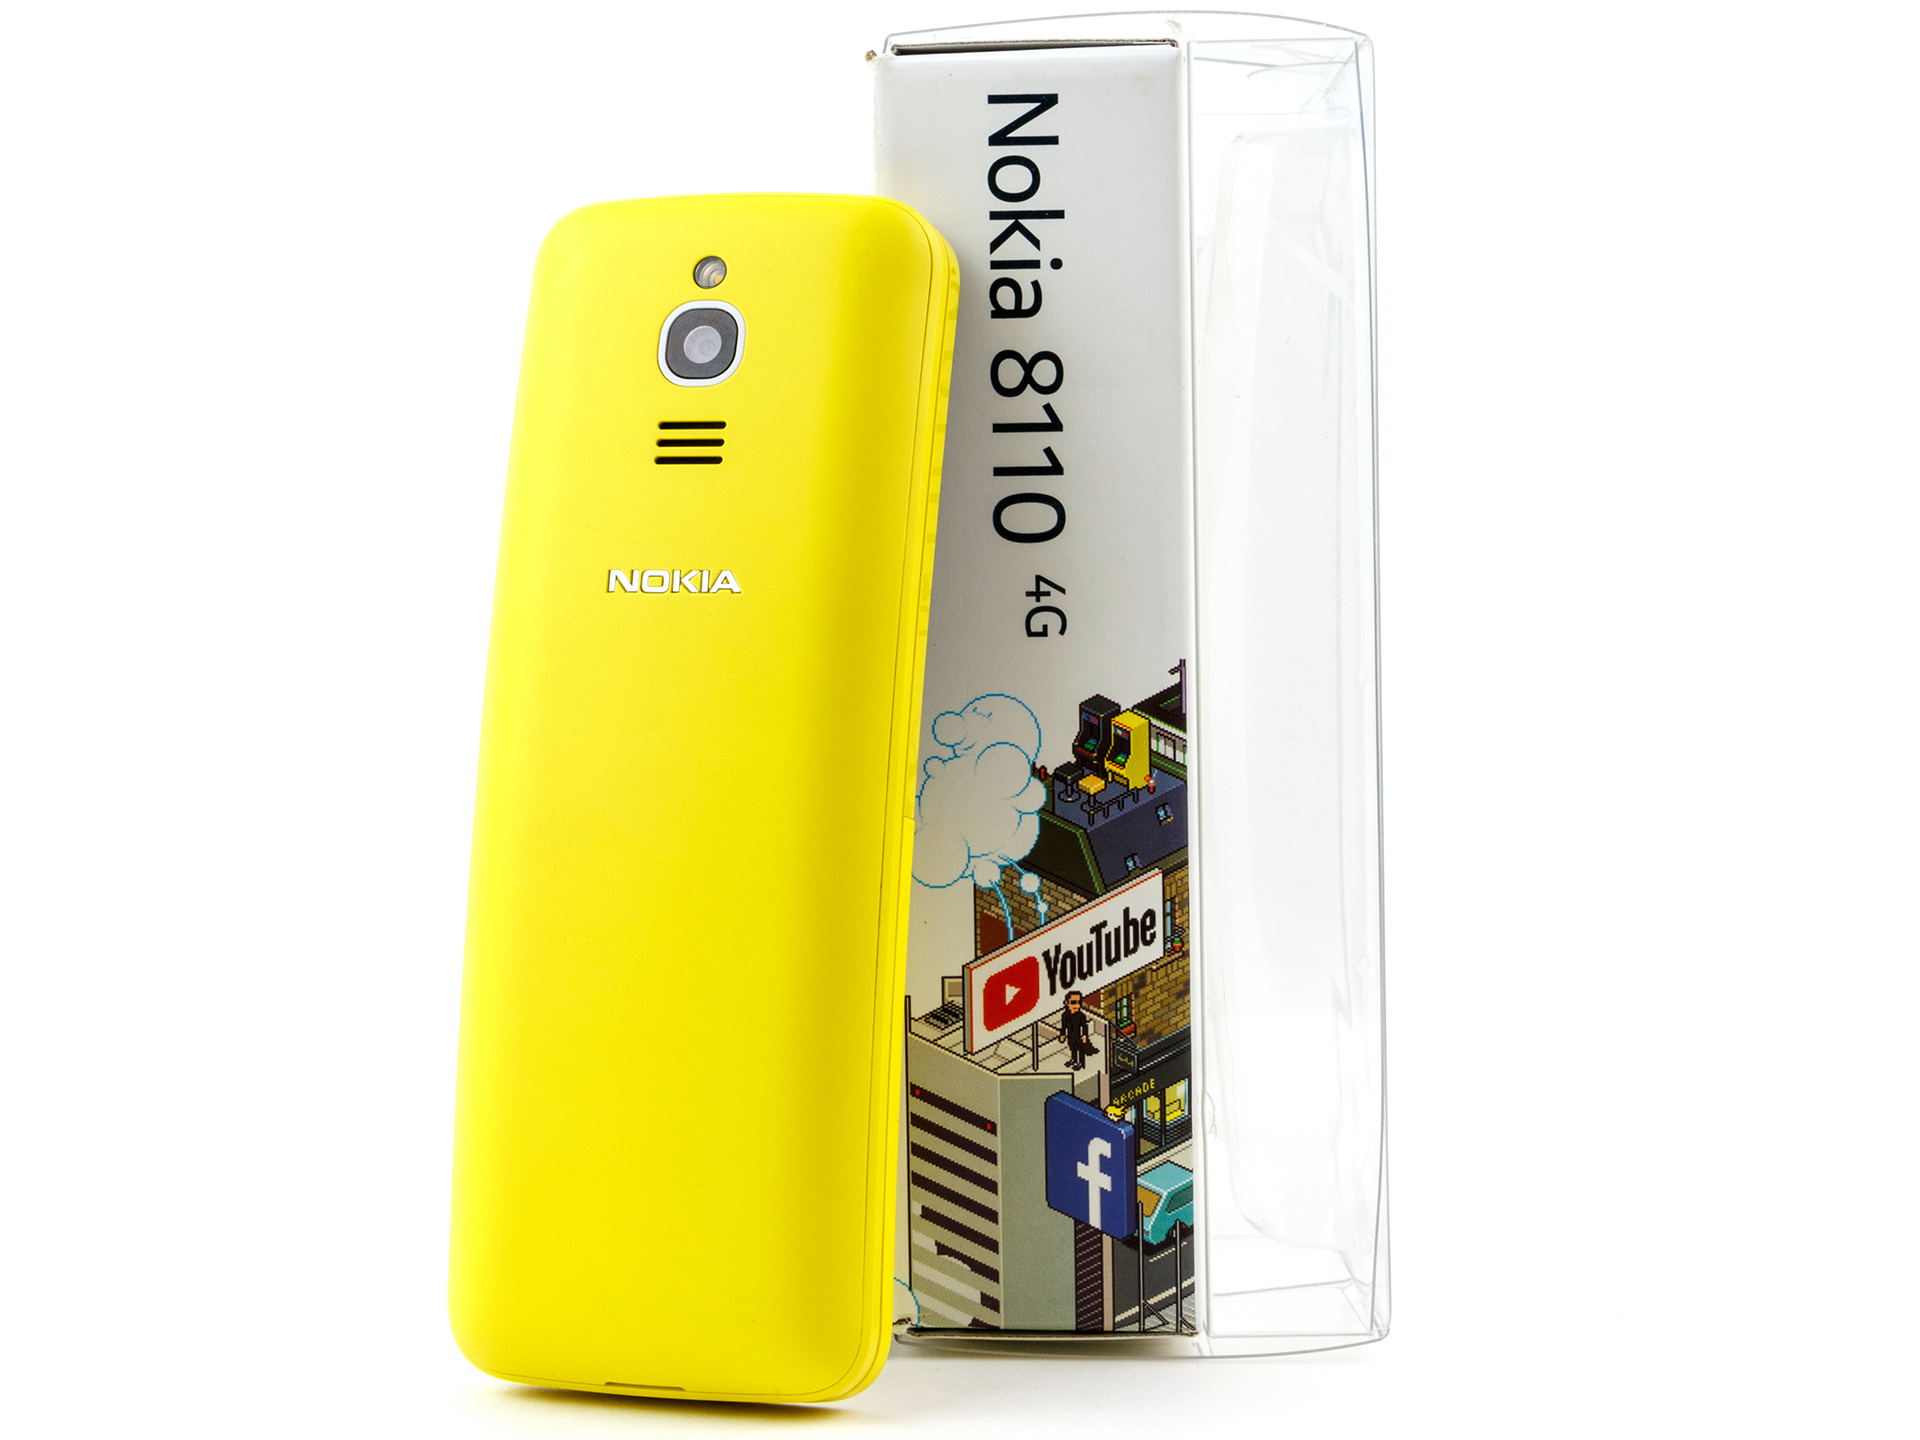 Điện thoại Nokia 8110 4G đánh giá: Sự trở lại của Nokia với mẫu điện thoại Nokia 8110 4G được đánh giá cao bởi thiết kế cổ điển, tính năng ấn tượng và chất lượng đáng kinh ngạc. Cùng khám phá đánh giá chi tiết về sản phẩm này để có được những trải nghiệm tốt nhất.